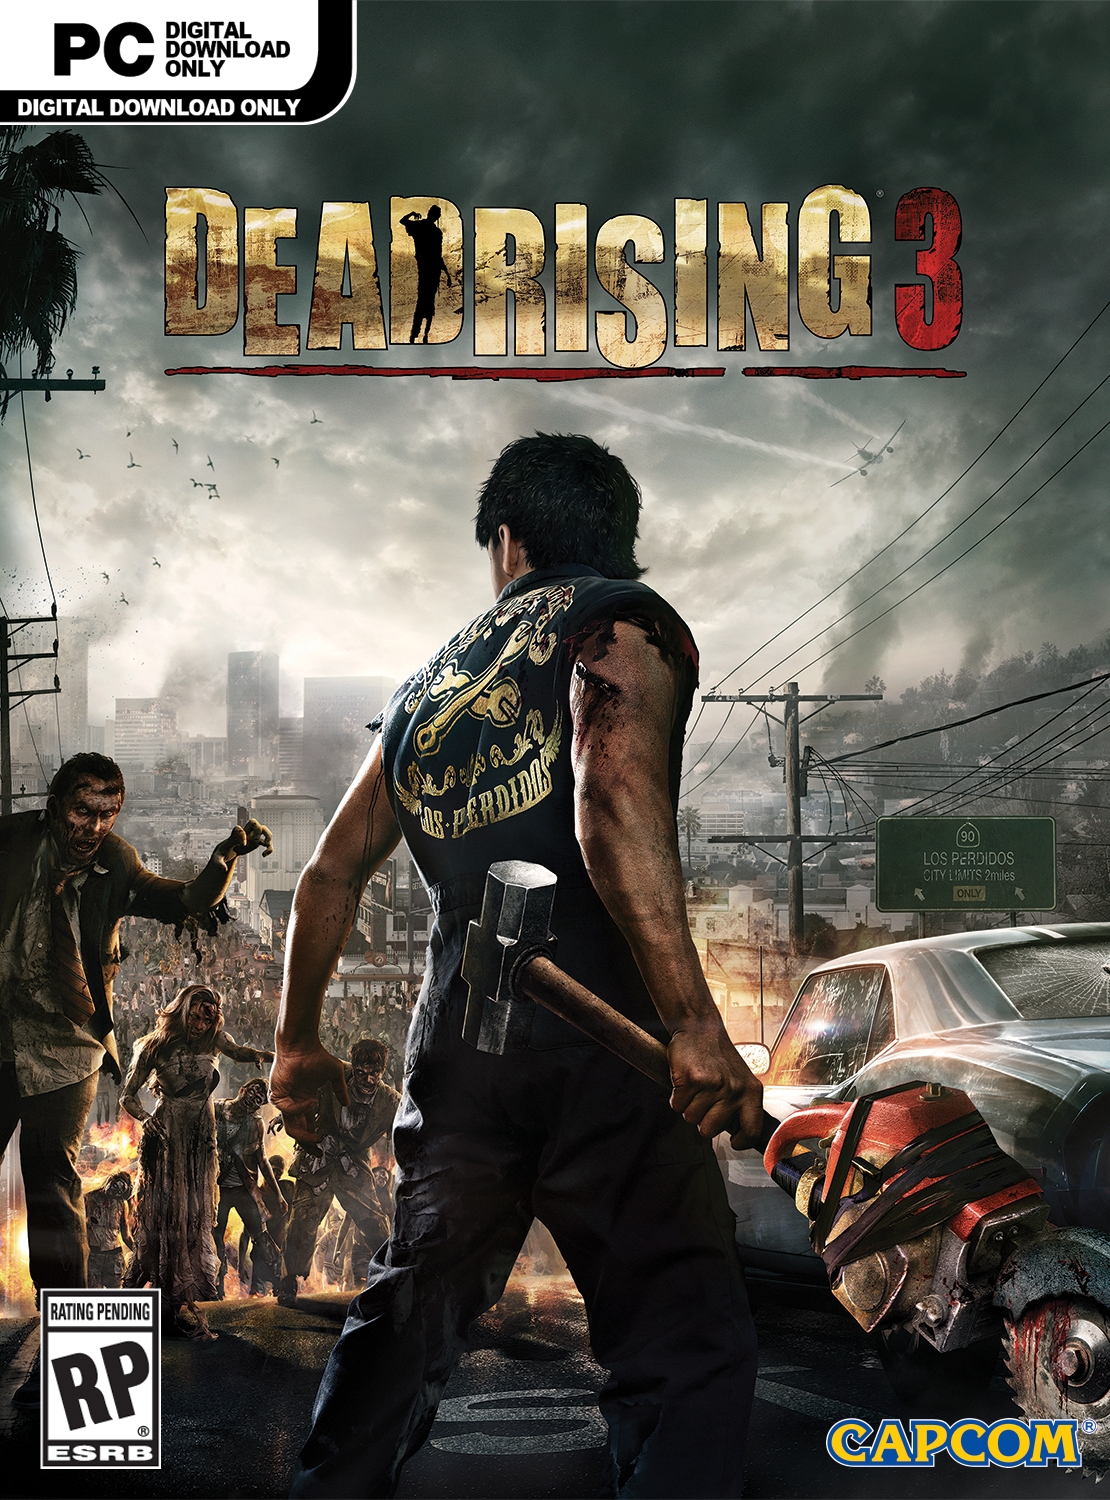 Dead Rising 2 - PC - Compre na Nuuvem